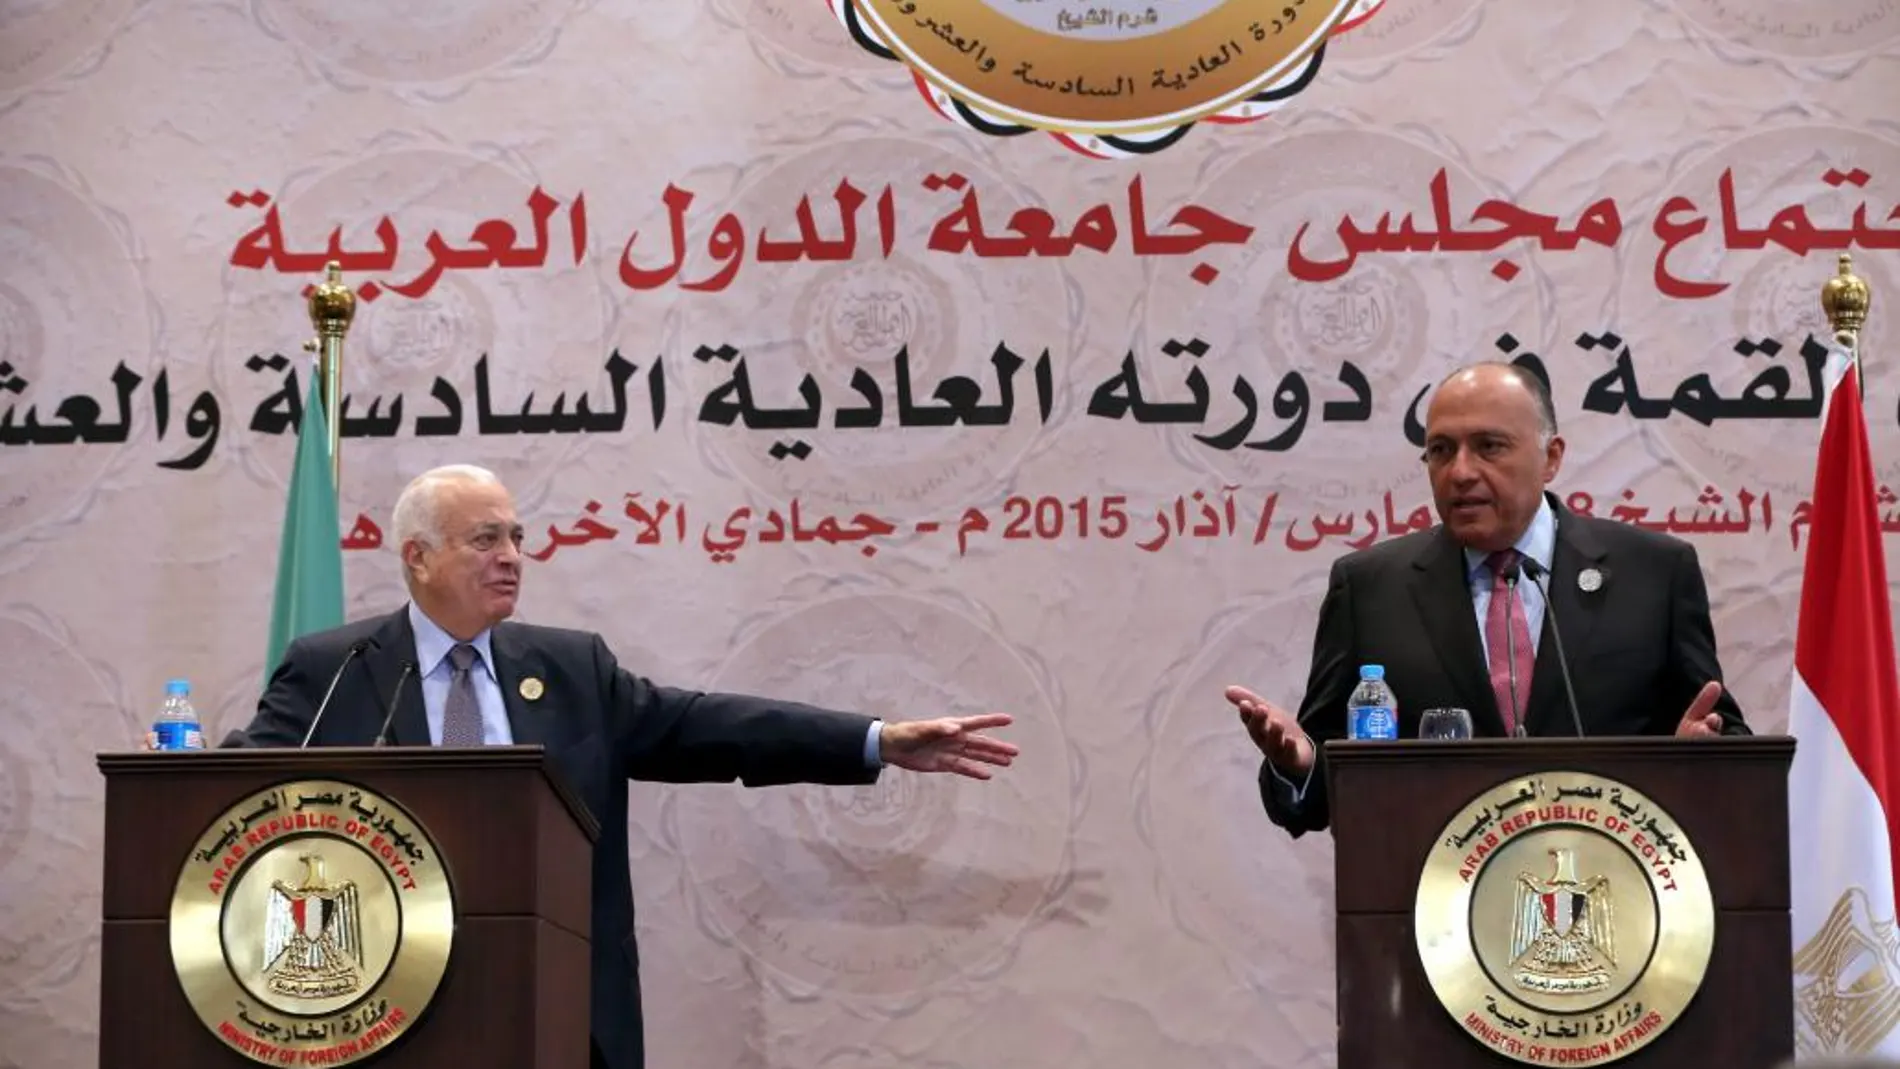 El secretario general de la Liga Árabe, Nabil al-Arabi, y el ministro de Asuntos Exteriores de Egipto, Sameh Shoukry, anuncian el acuerdo